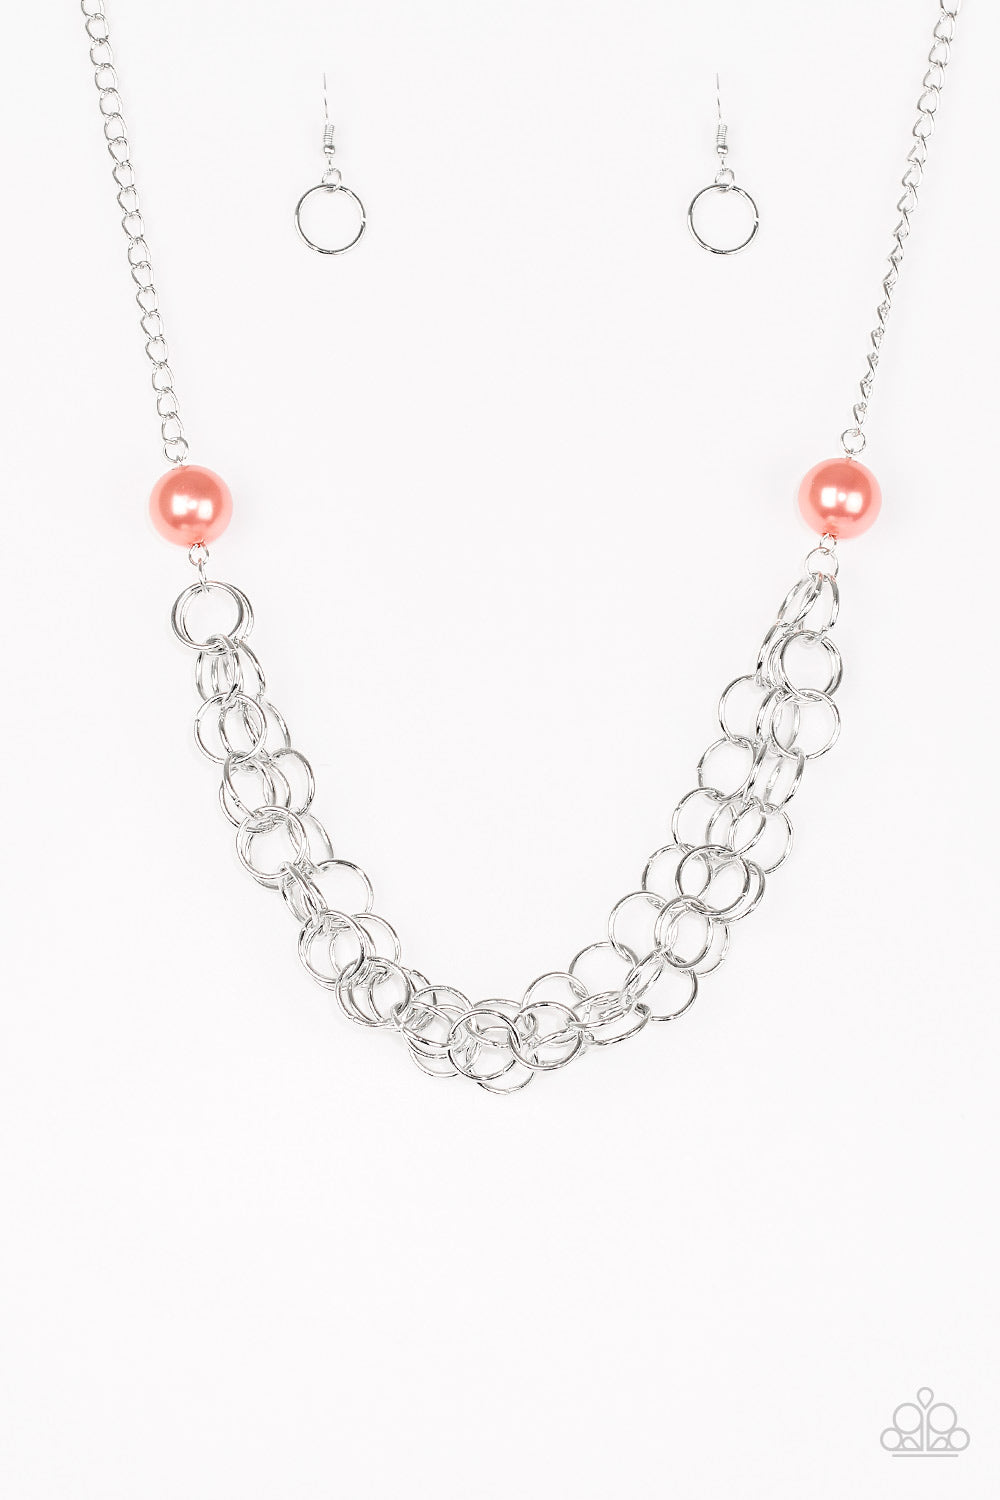 Daring Diva - Orange necklace B110